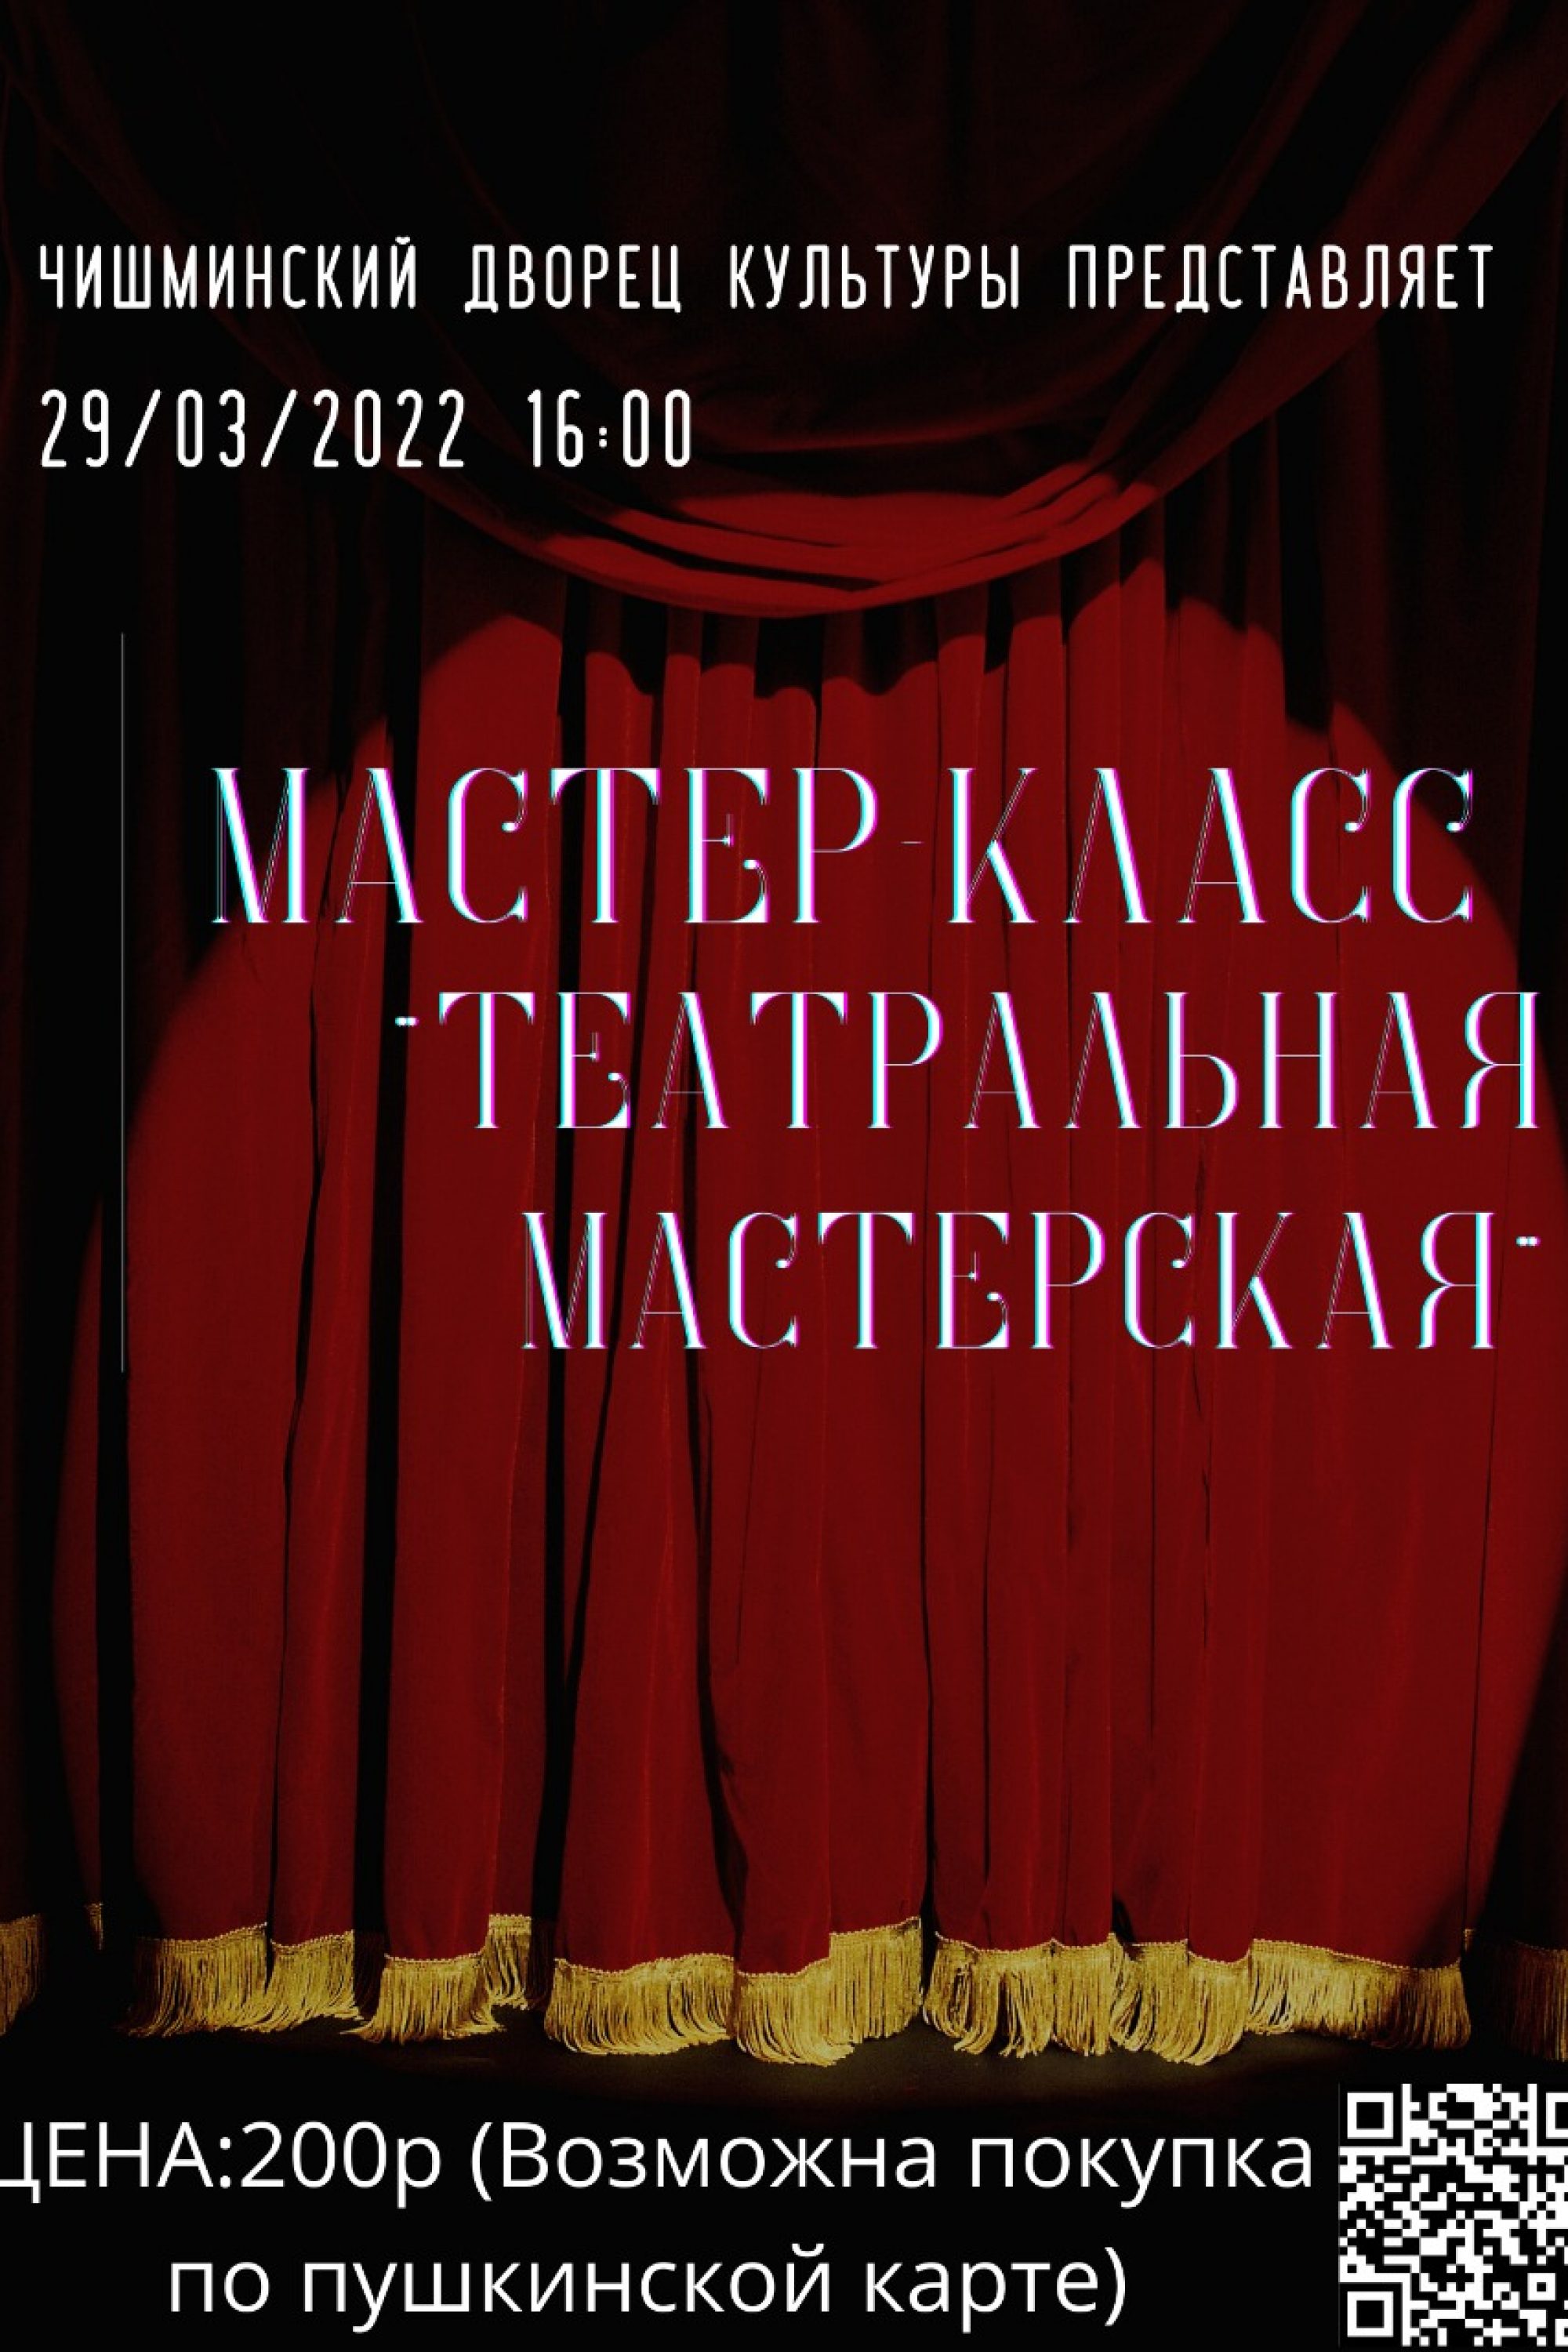 Мастер-класс «Театральная мастерская» 29.03.2022г. в 16:00